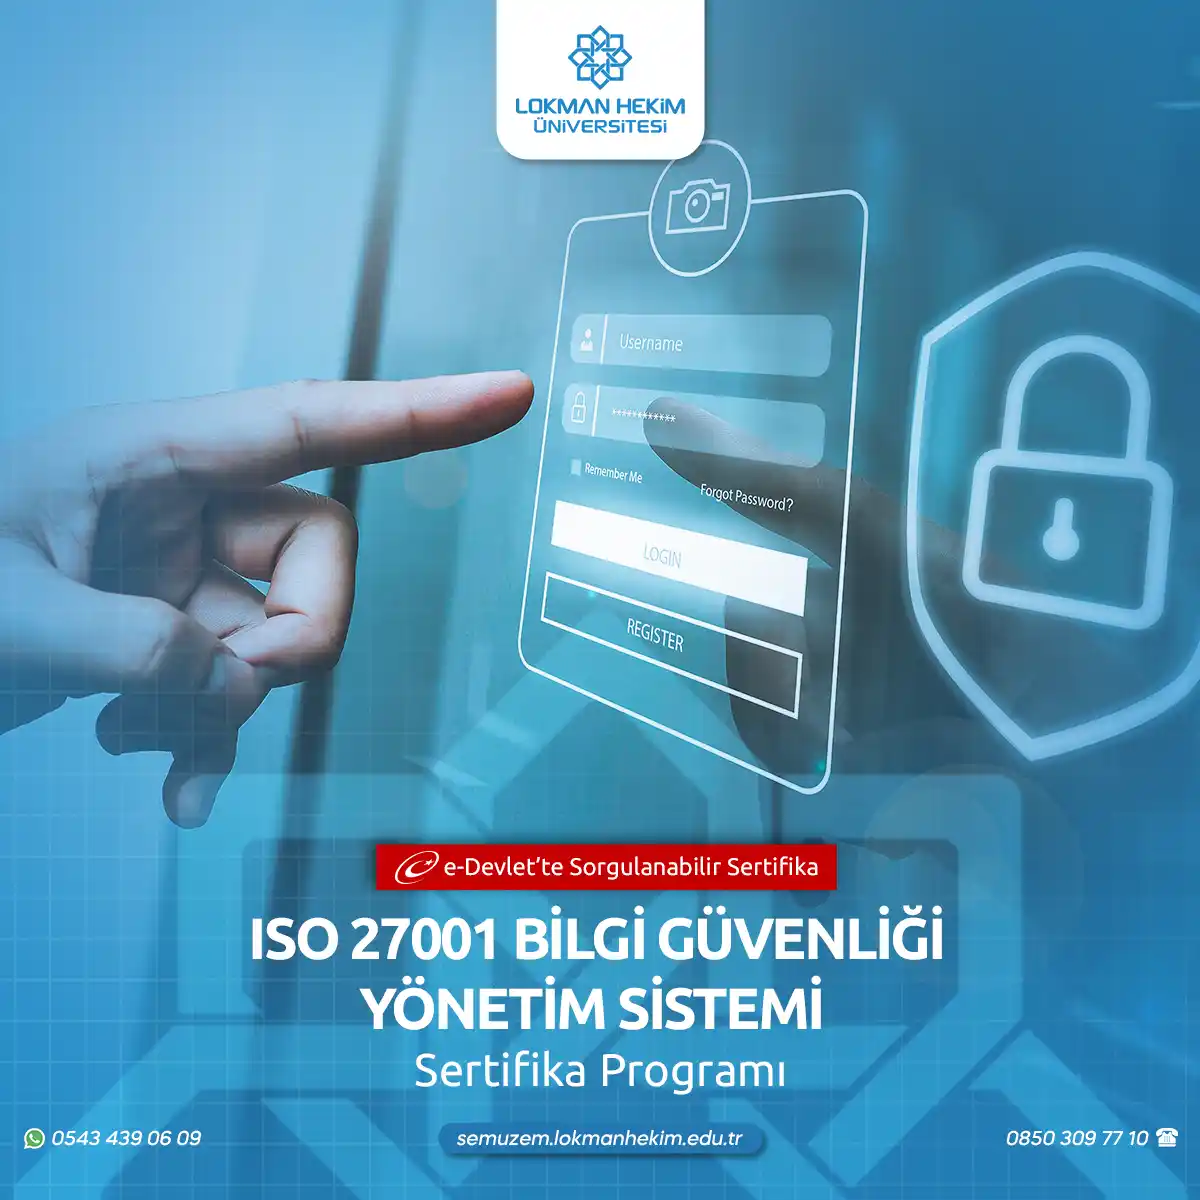 ISO 27001 Bilgi Güvenliği Yönetim Sistemi Sertifika Programı